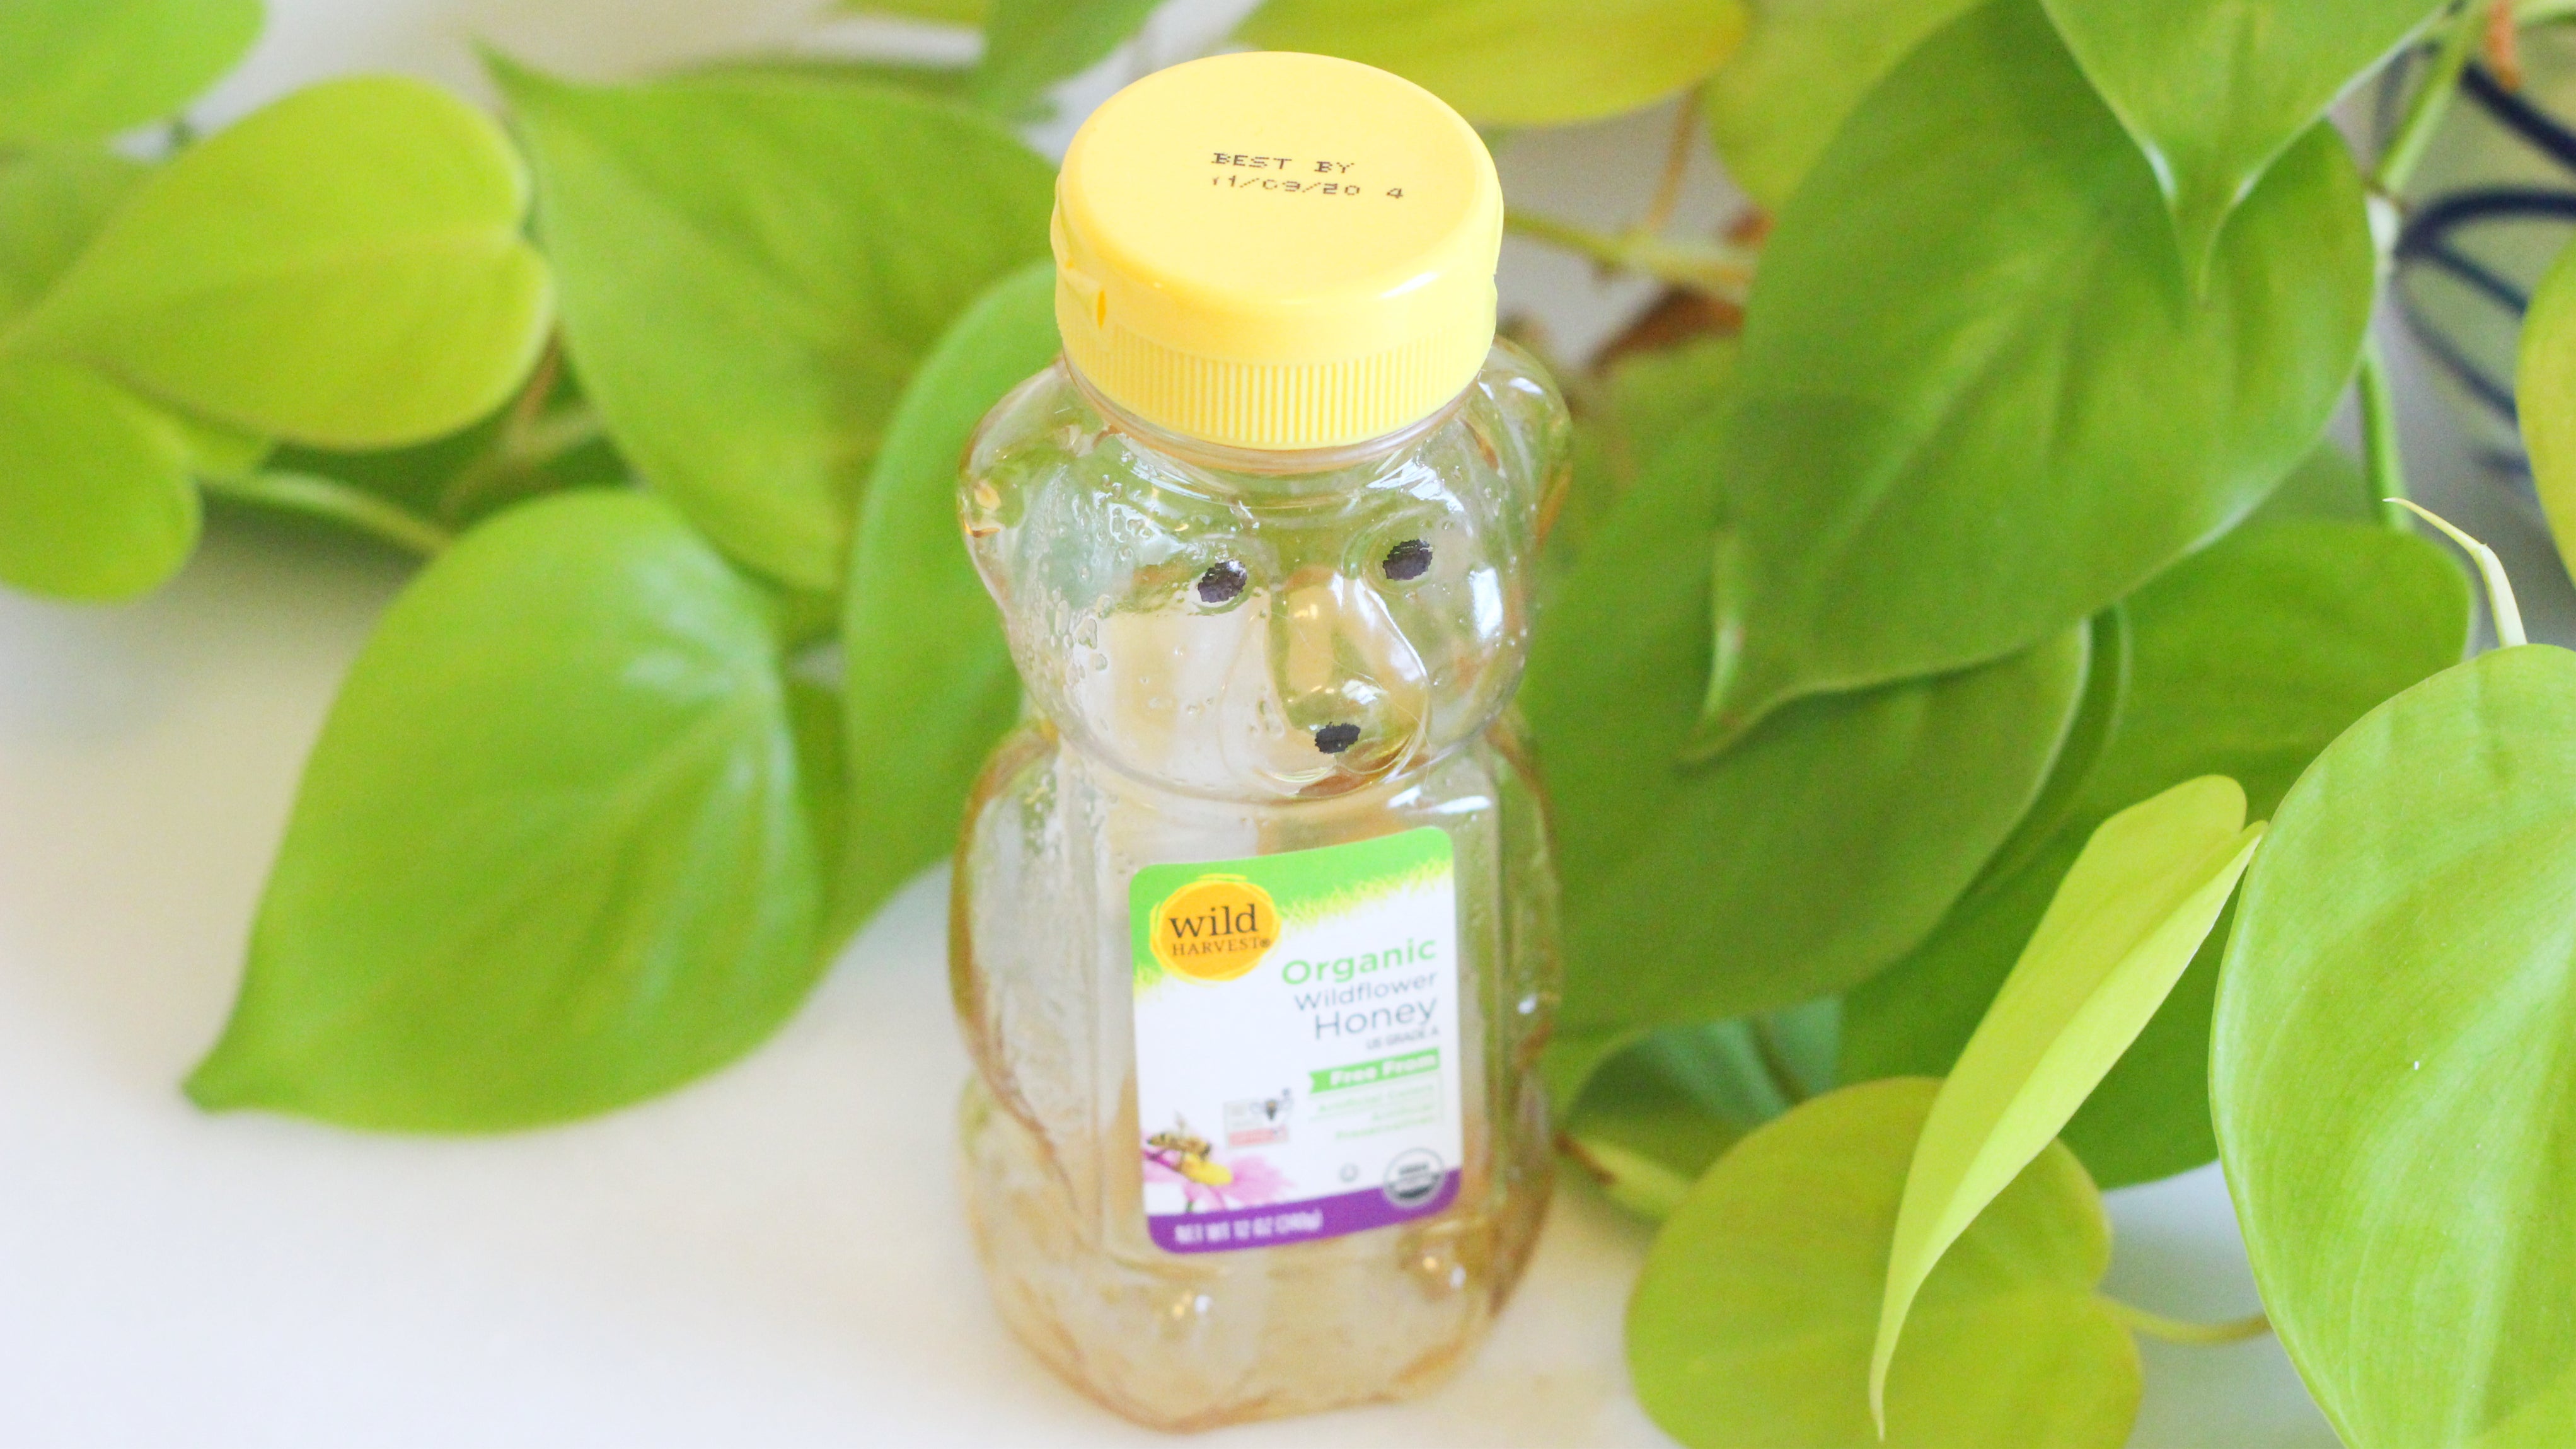 Make A Vinaigrette Inside An Almost Empty Honey Bottle